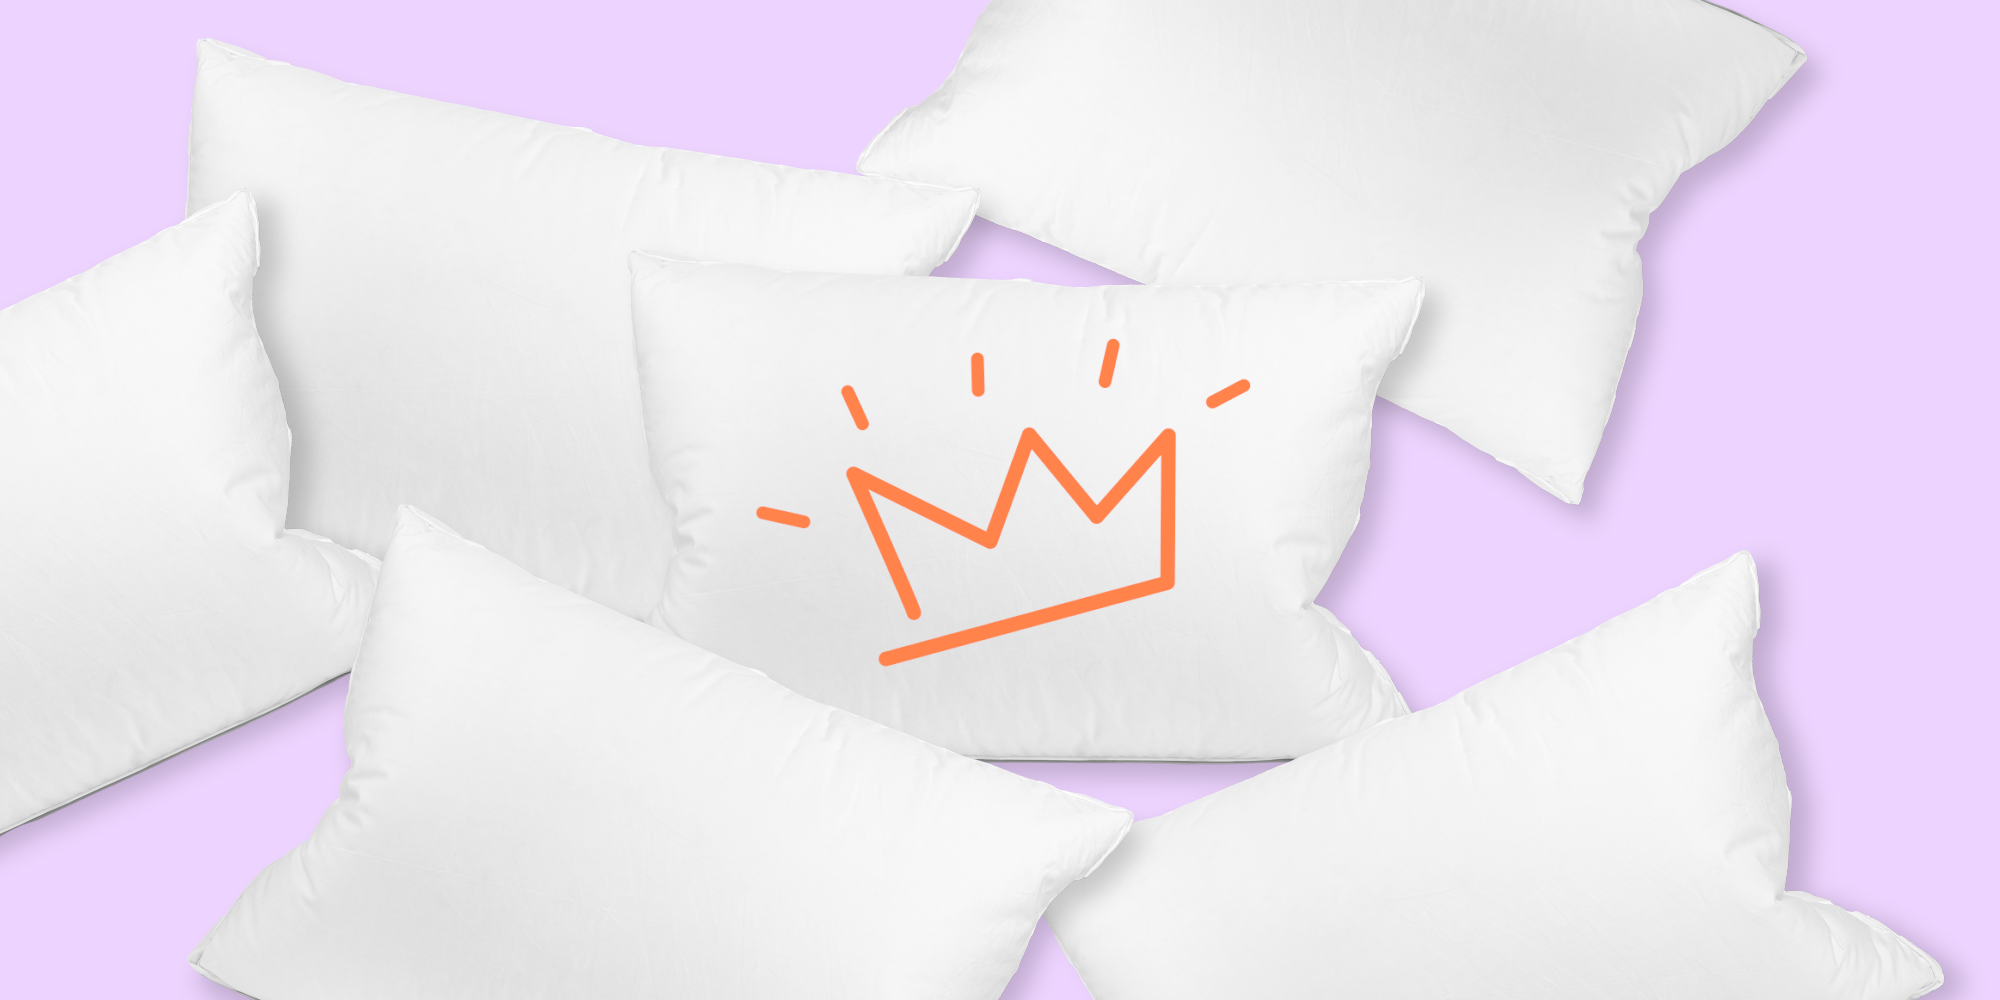 Pillow princess - What is a pillow princess?